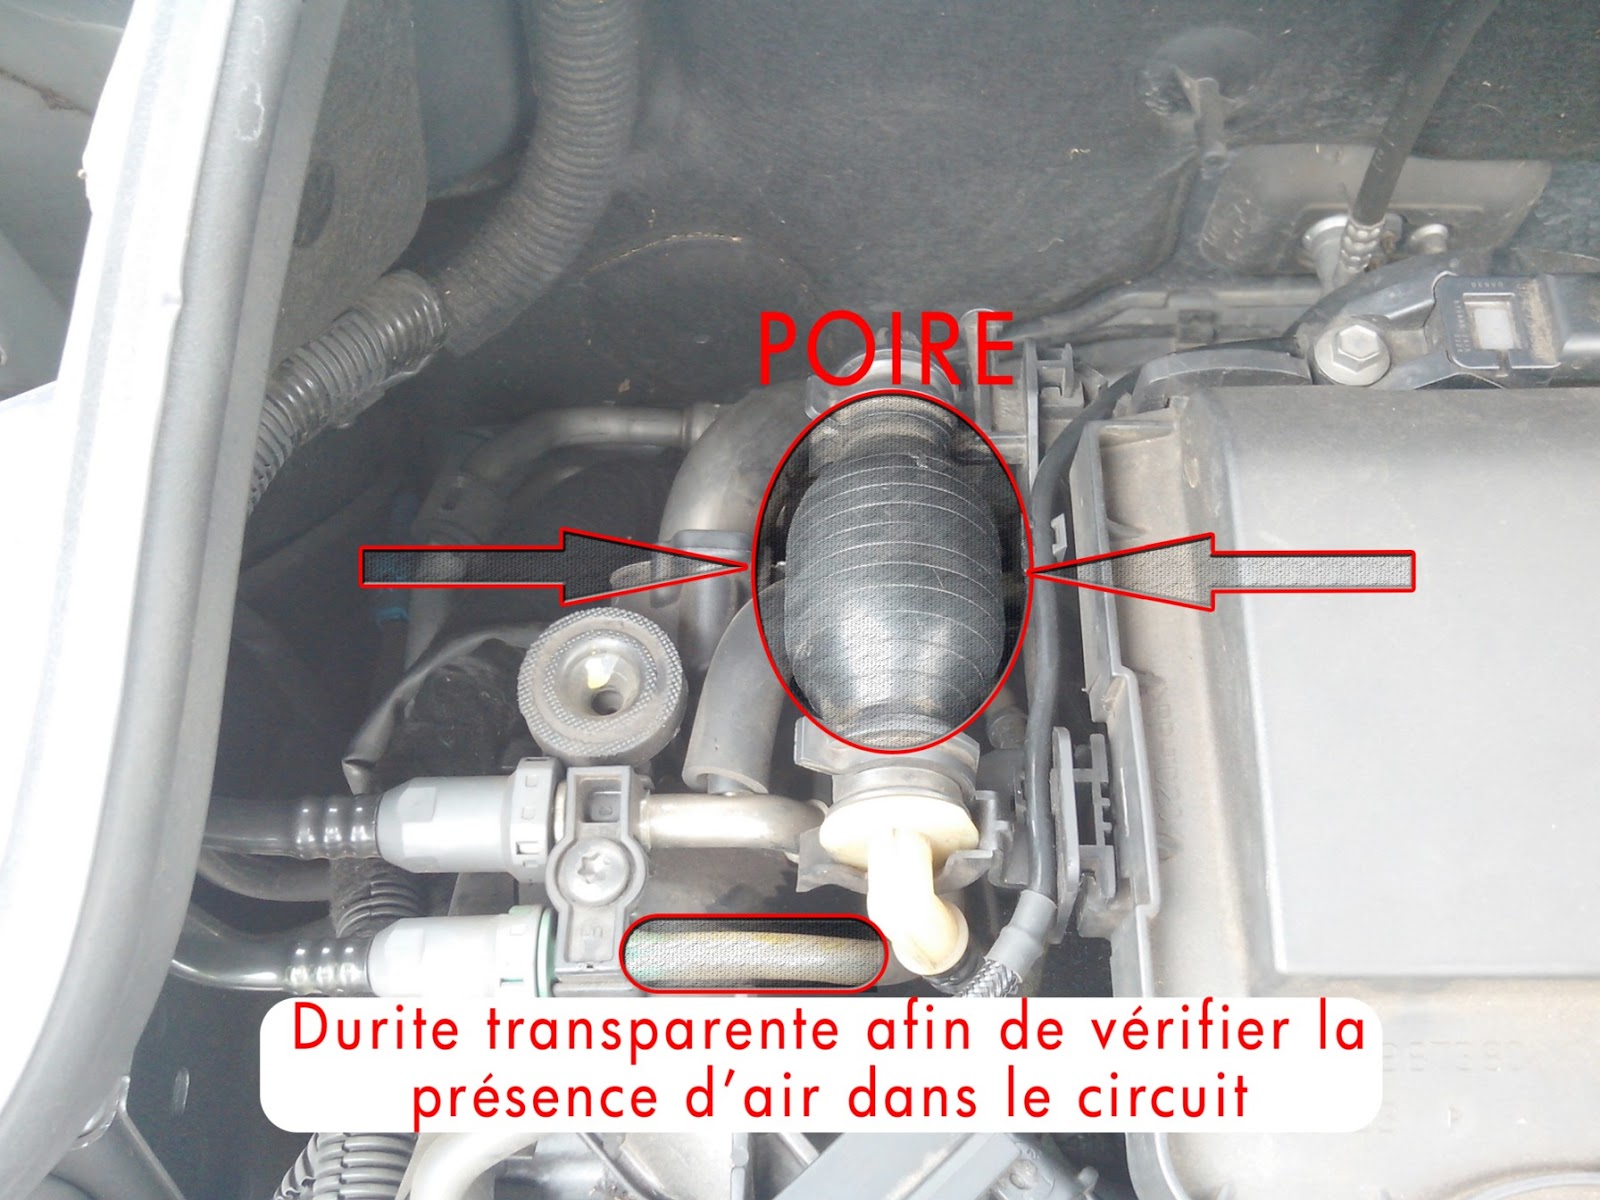 207 Durite gasoil Durite gasoil : Peugeot 206 , 207 ( moteur : 1.4